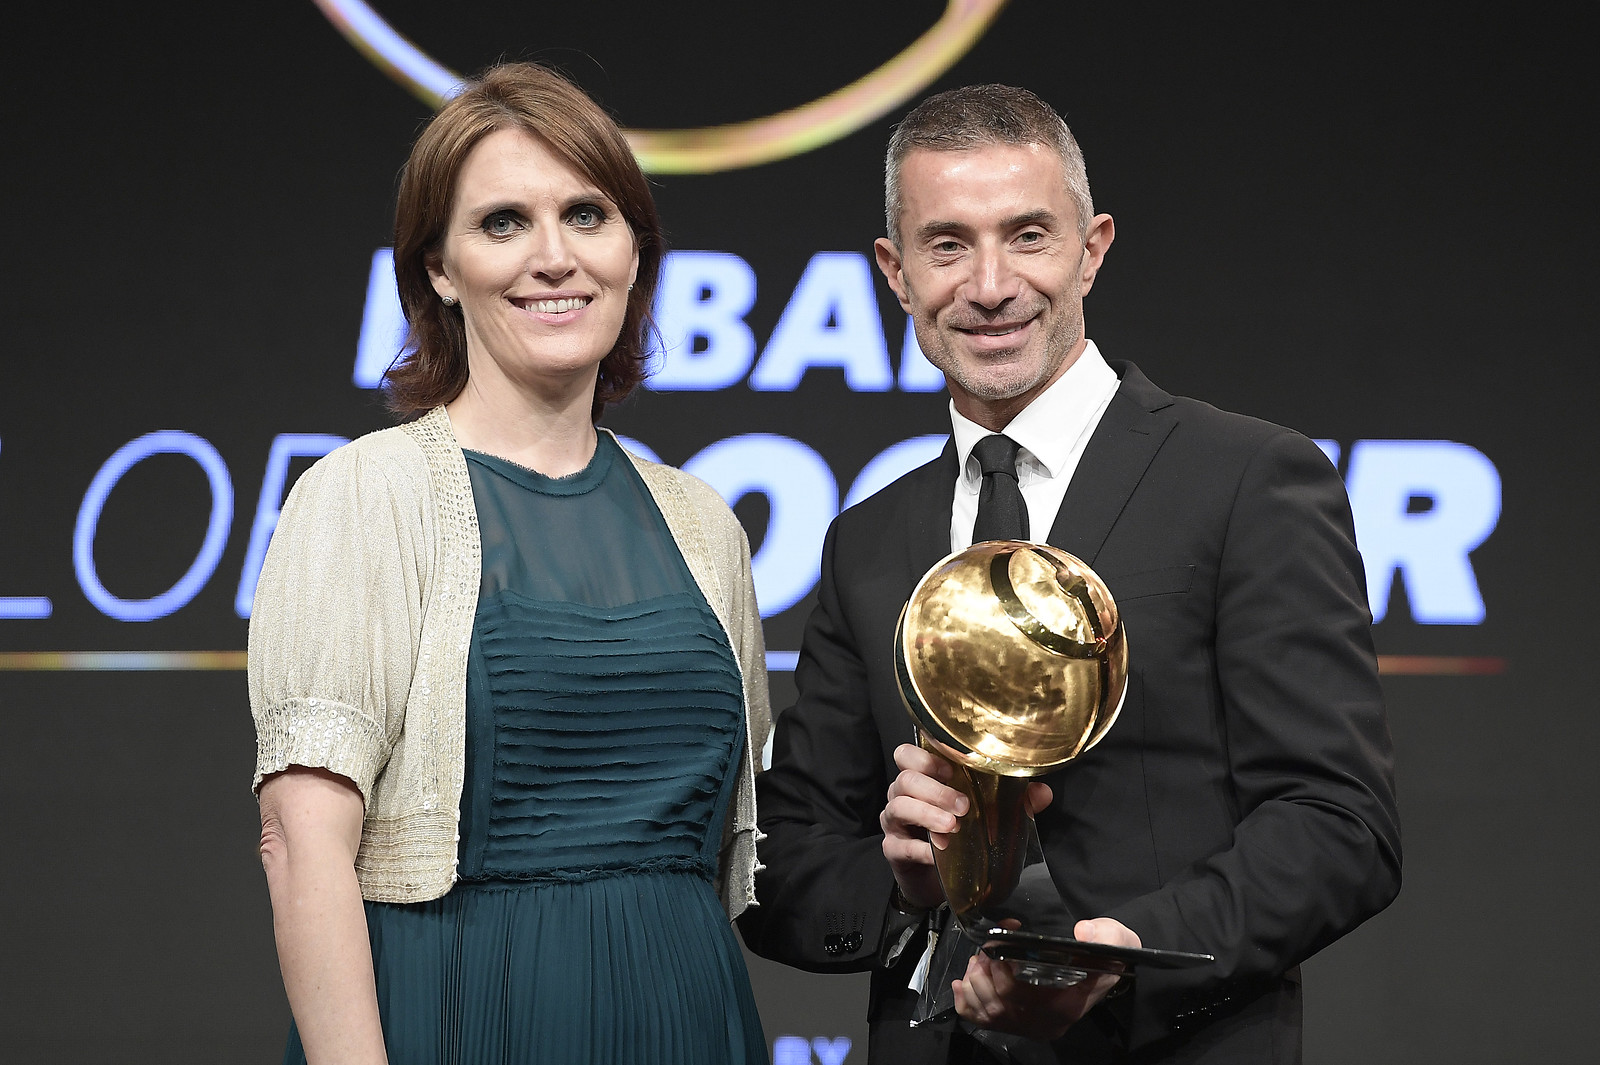 Globe Soccer Award 2019 - Decima Edizione